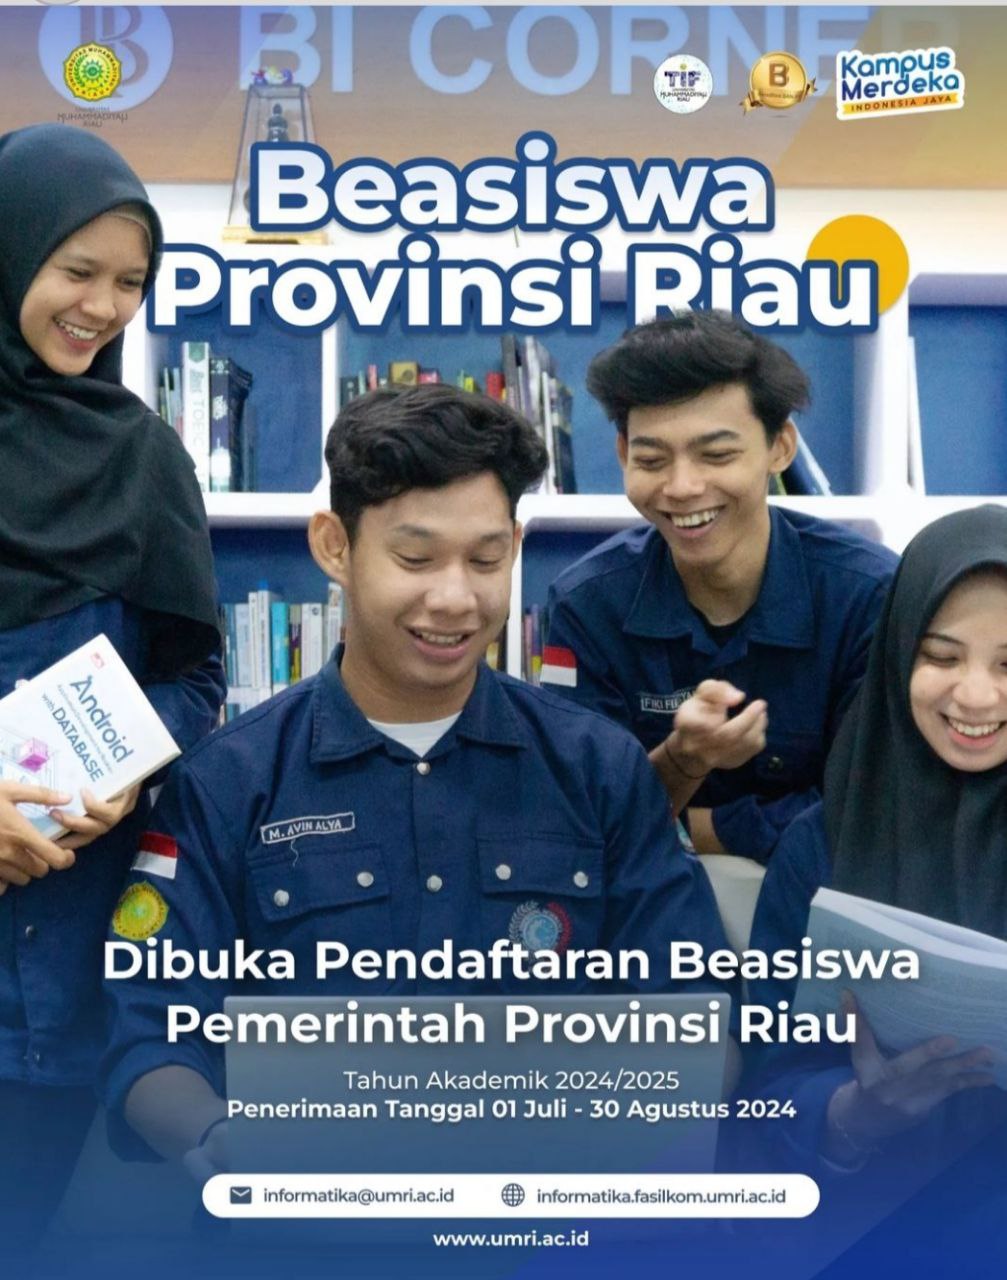 Beasiswa Prestasi Pemerintah Provinsi Riau Tahun Akademik 2014/2025